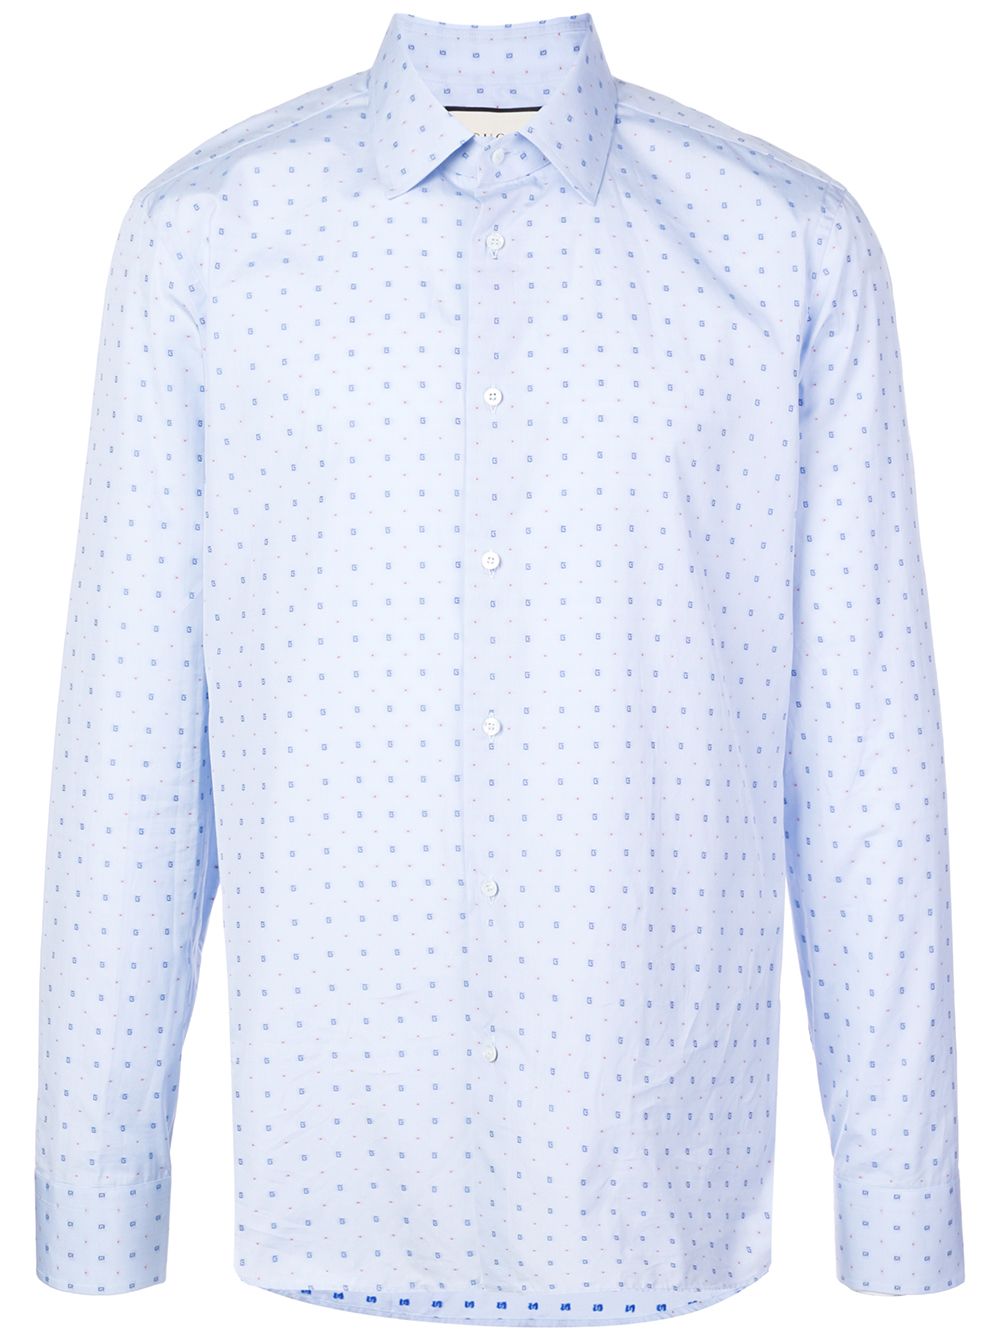 фото Gucci рубашка из ткани филькупе в горох